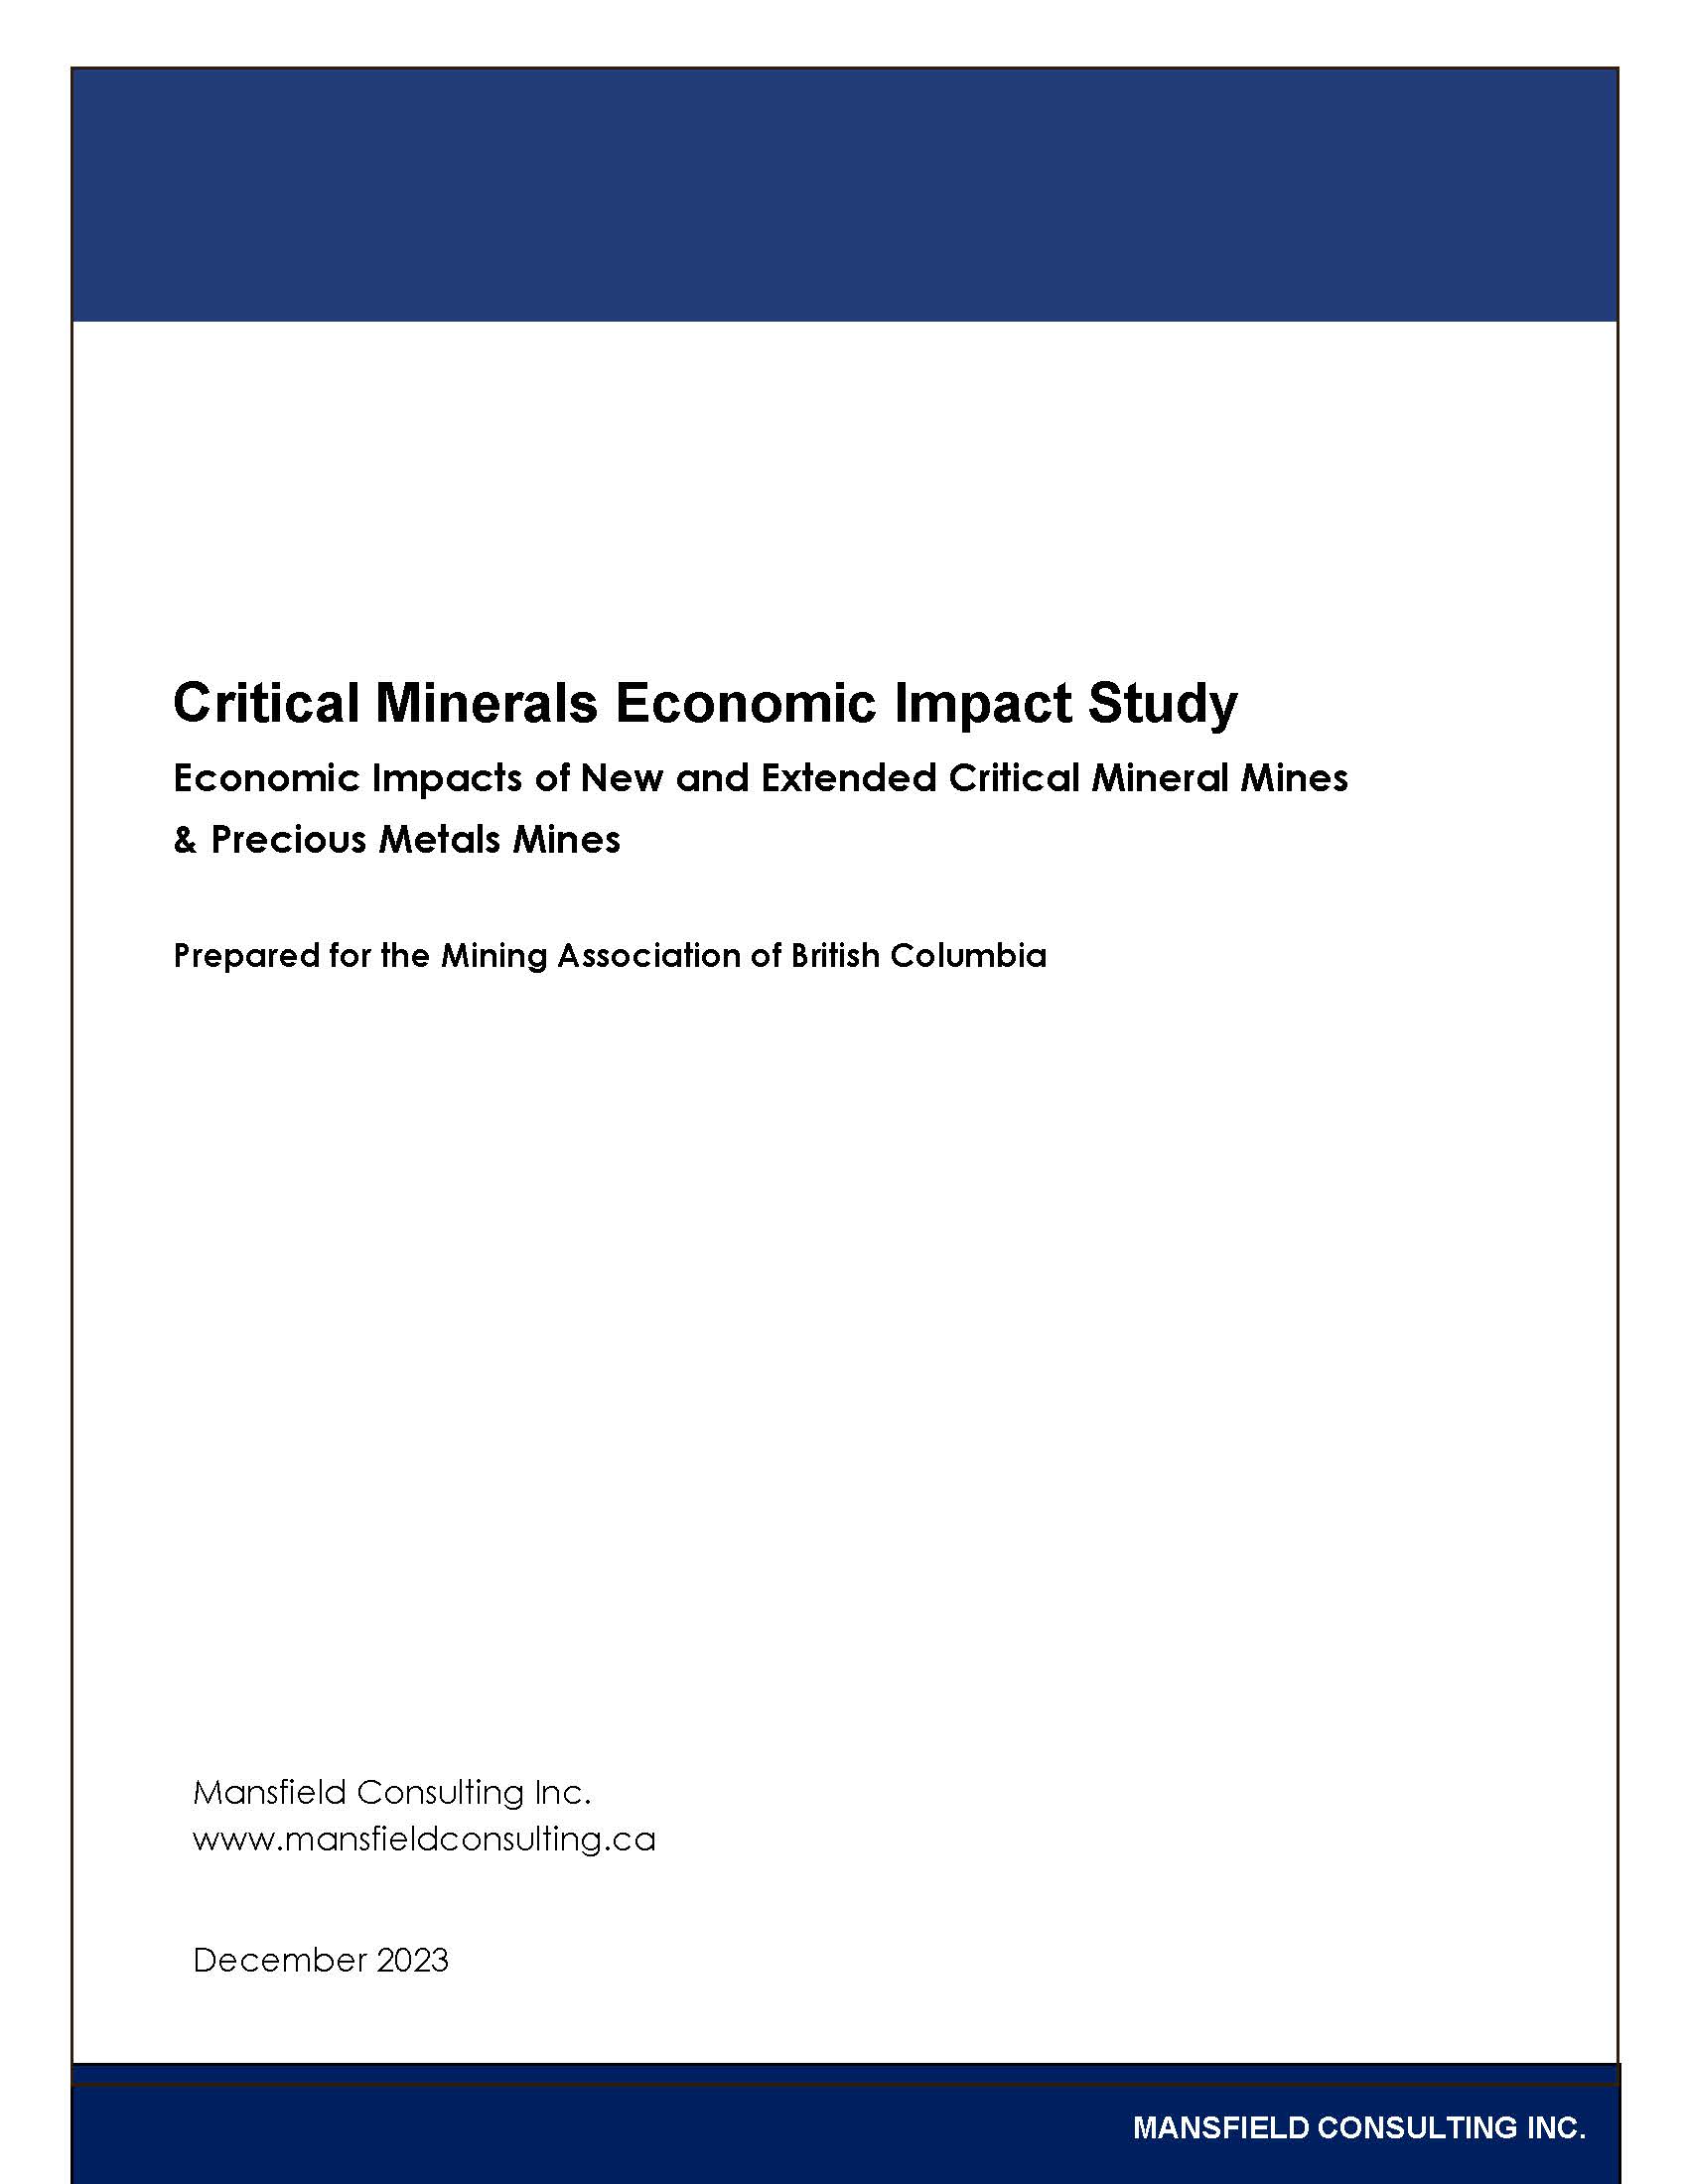 Critical Minerals Economic Impact Study: Economic Impacts of New and Extended Critical Mineral Mines & Precious Metals Mines